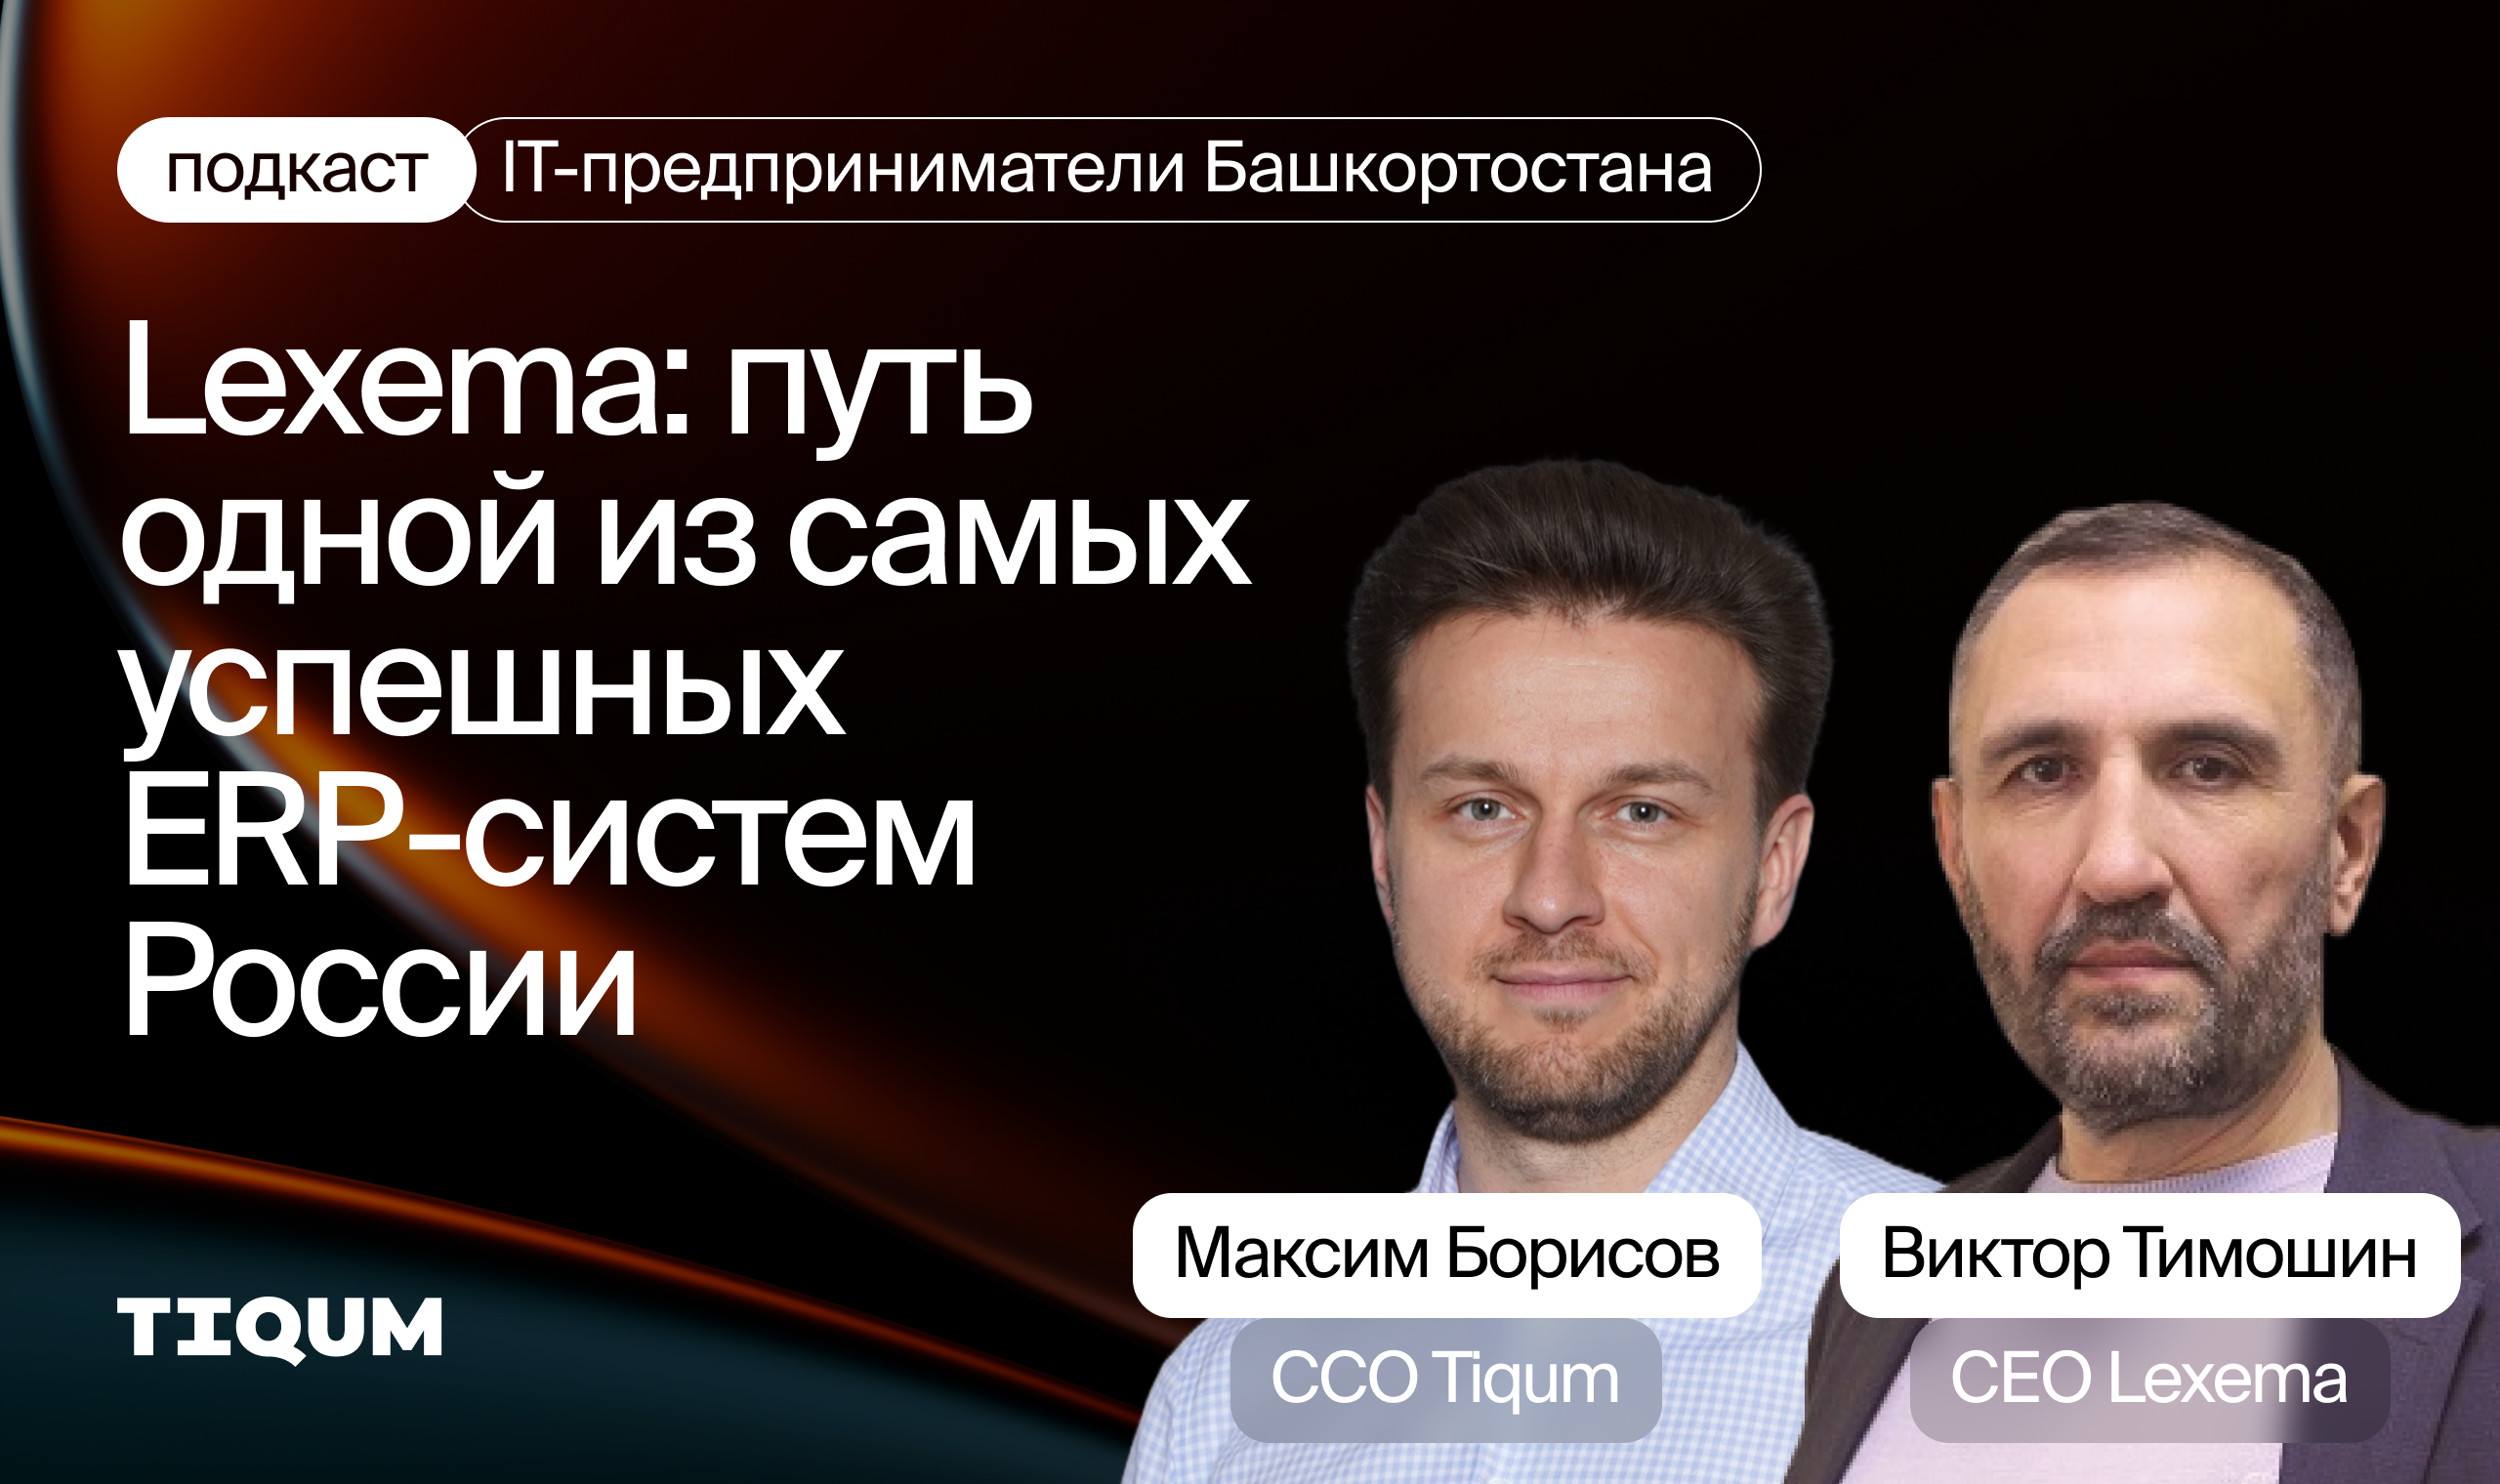 IT-предприниматели Башкортостана. Lexema – путь одной из самых успешных ERP-систем России